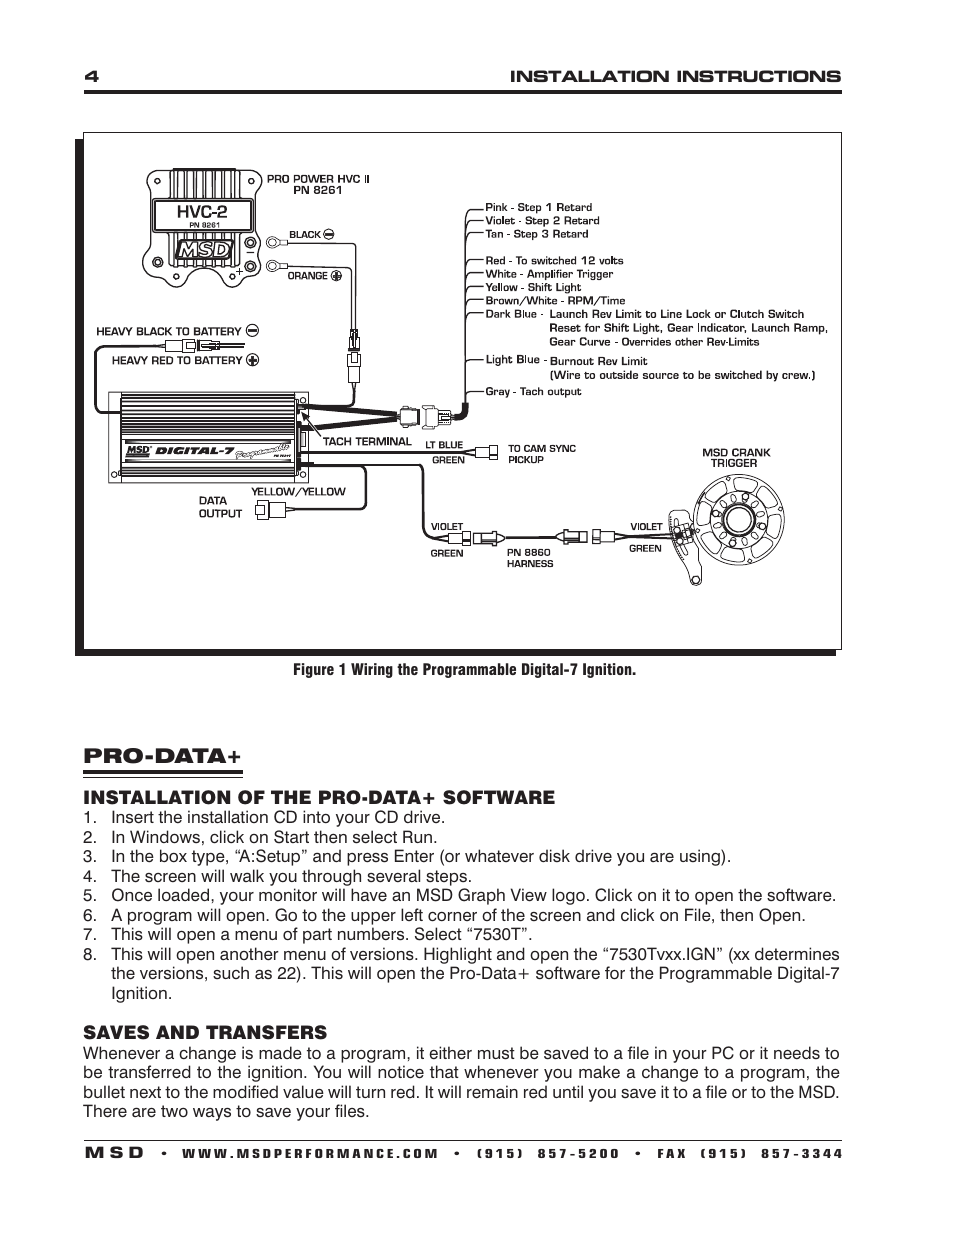 msd 7al-3 wiring diagram